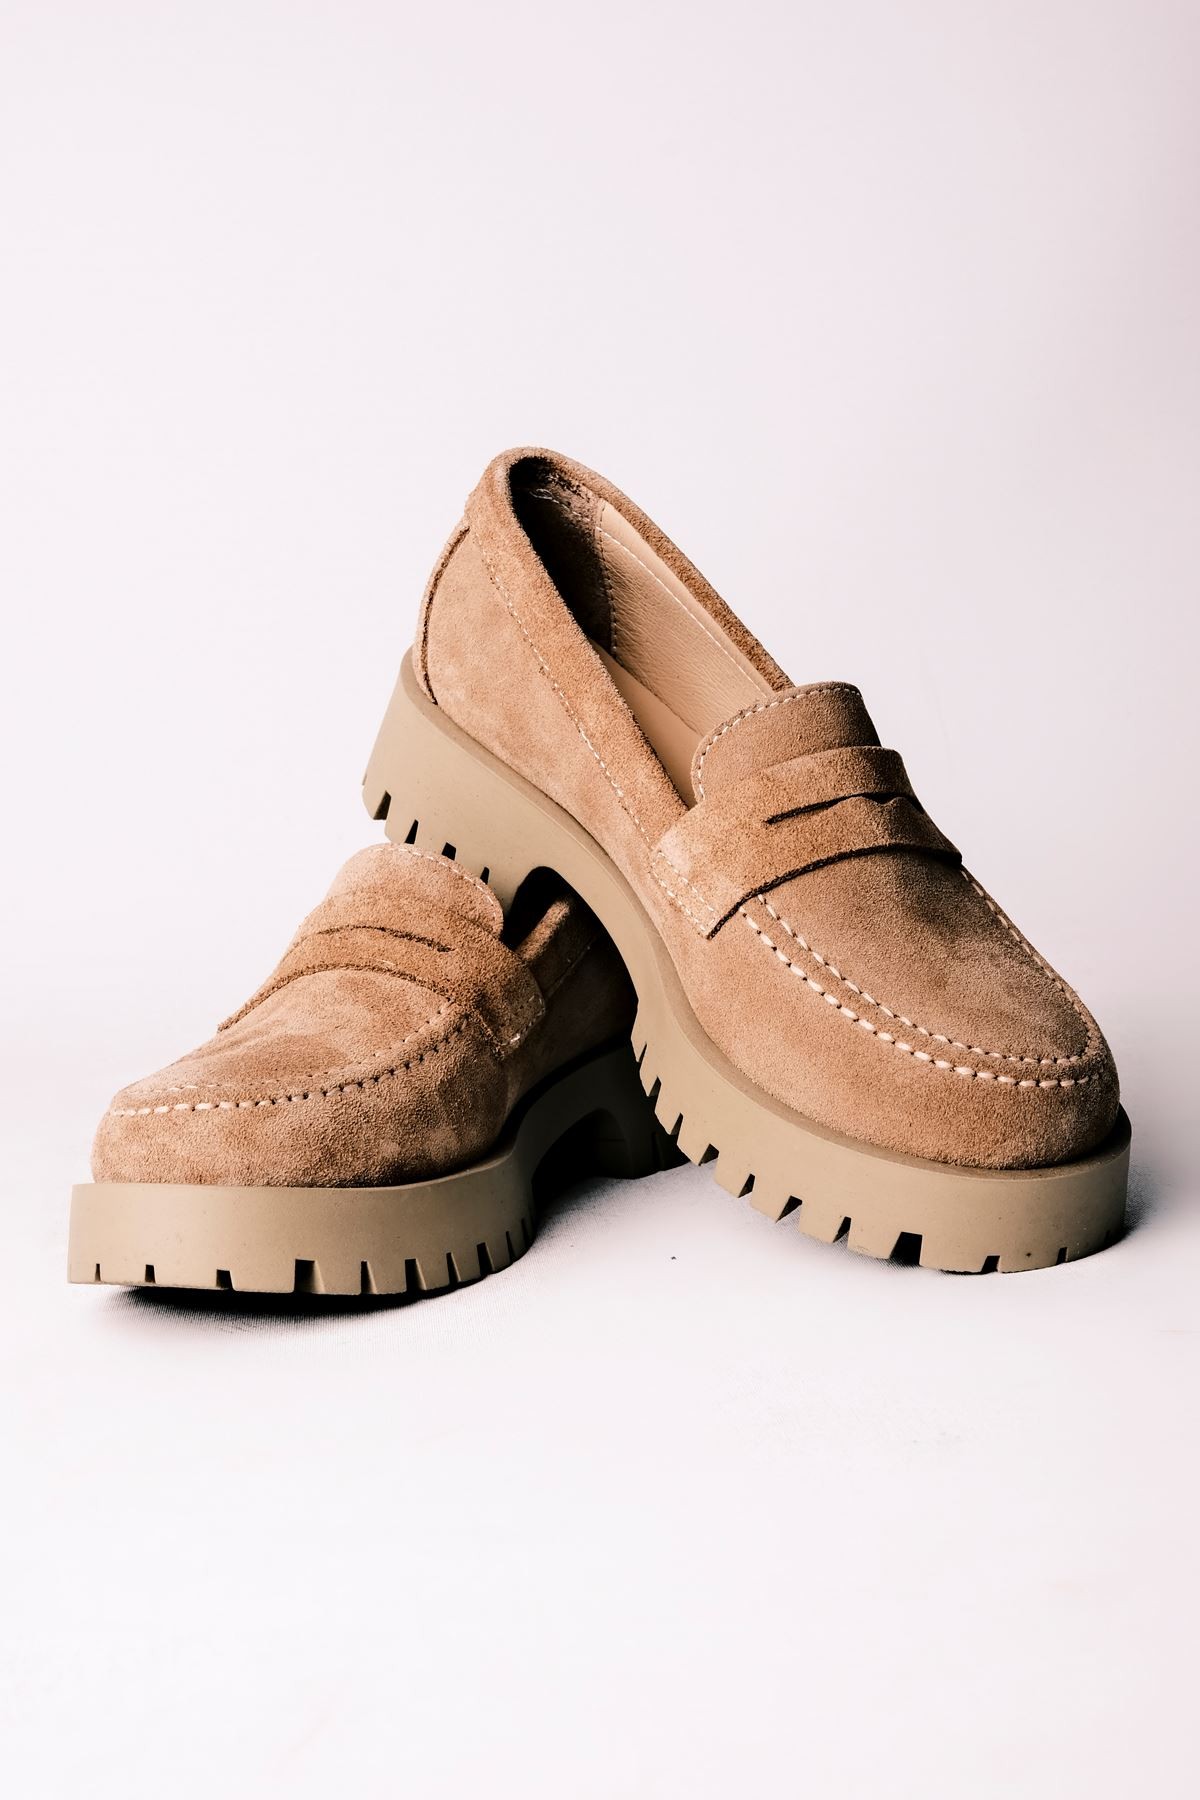 Deva Kadın Hakiki Deri Oxford Ayakkabı Düz Model - S.VİZYON